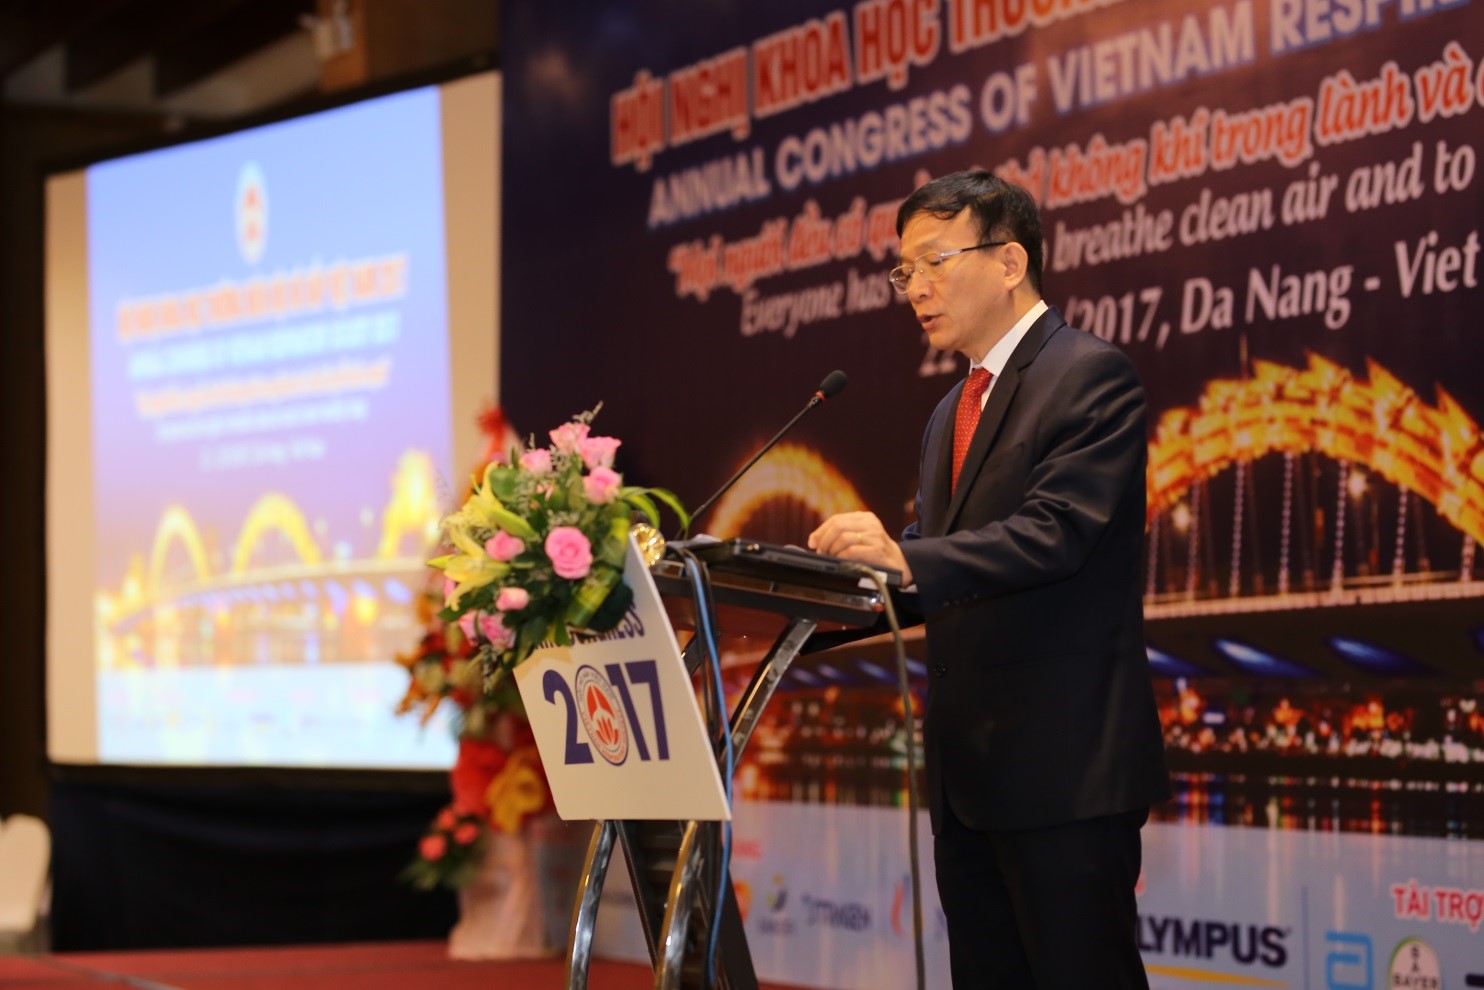 Lãnh đạo và Ban chấp hành Hội Hô hấp Việt Nam nhiệm kỳ 2019 - 2024